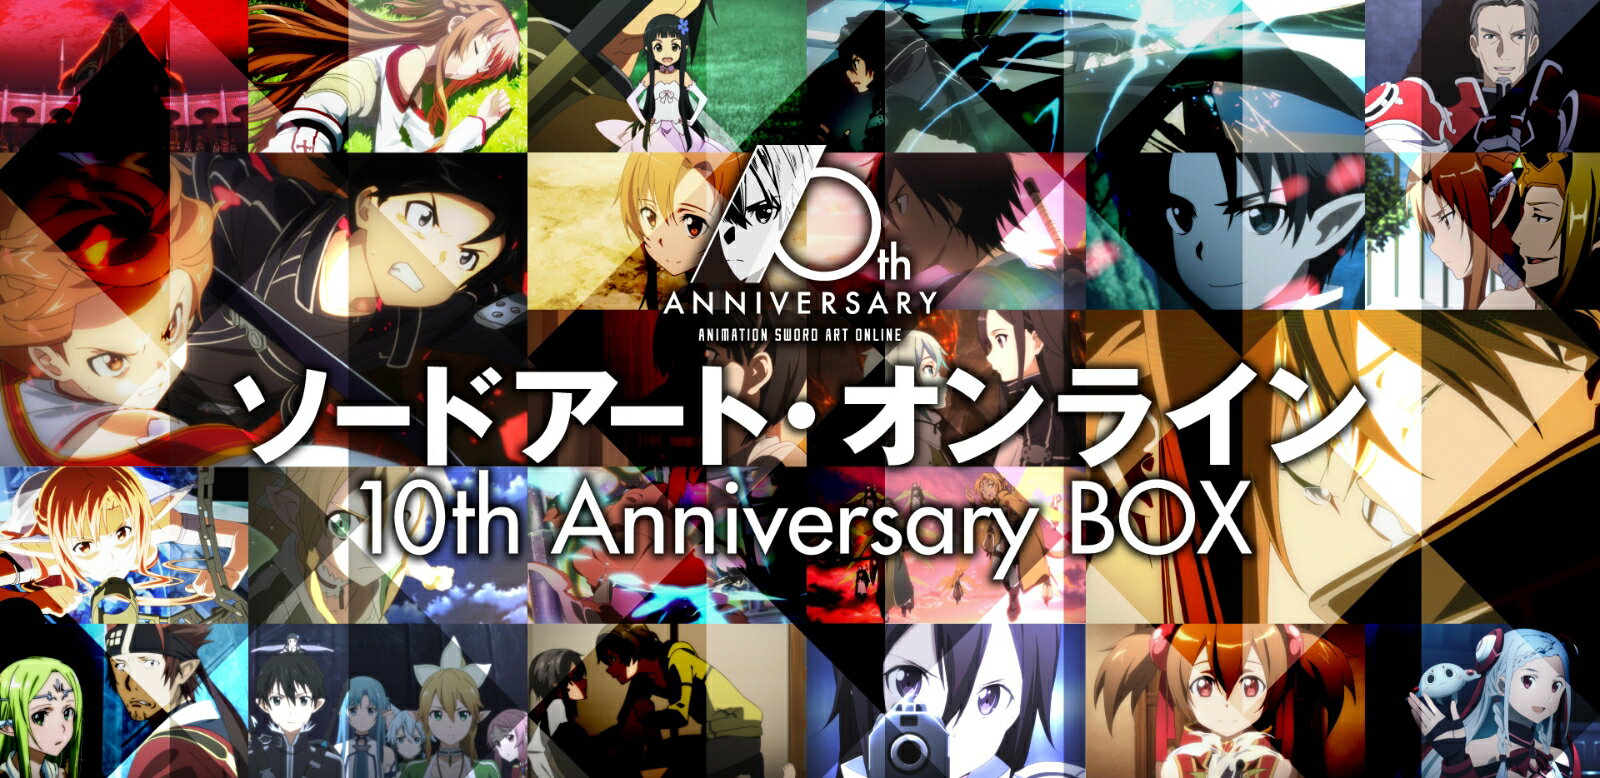 ソードアート オンライン 10th Anniversary BOX【完全生産限定版】【Blu-ray】 松岡禎丞